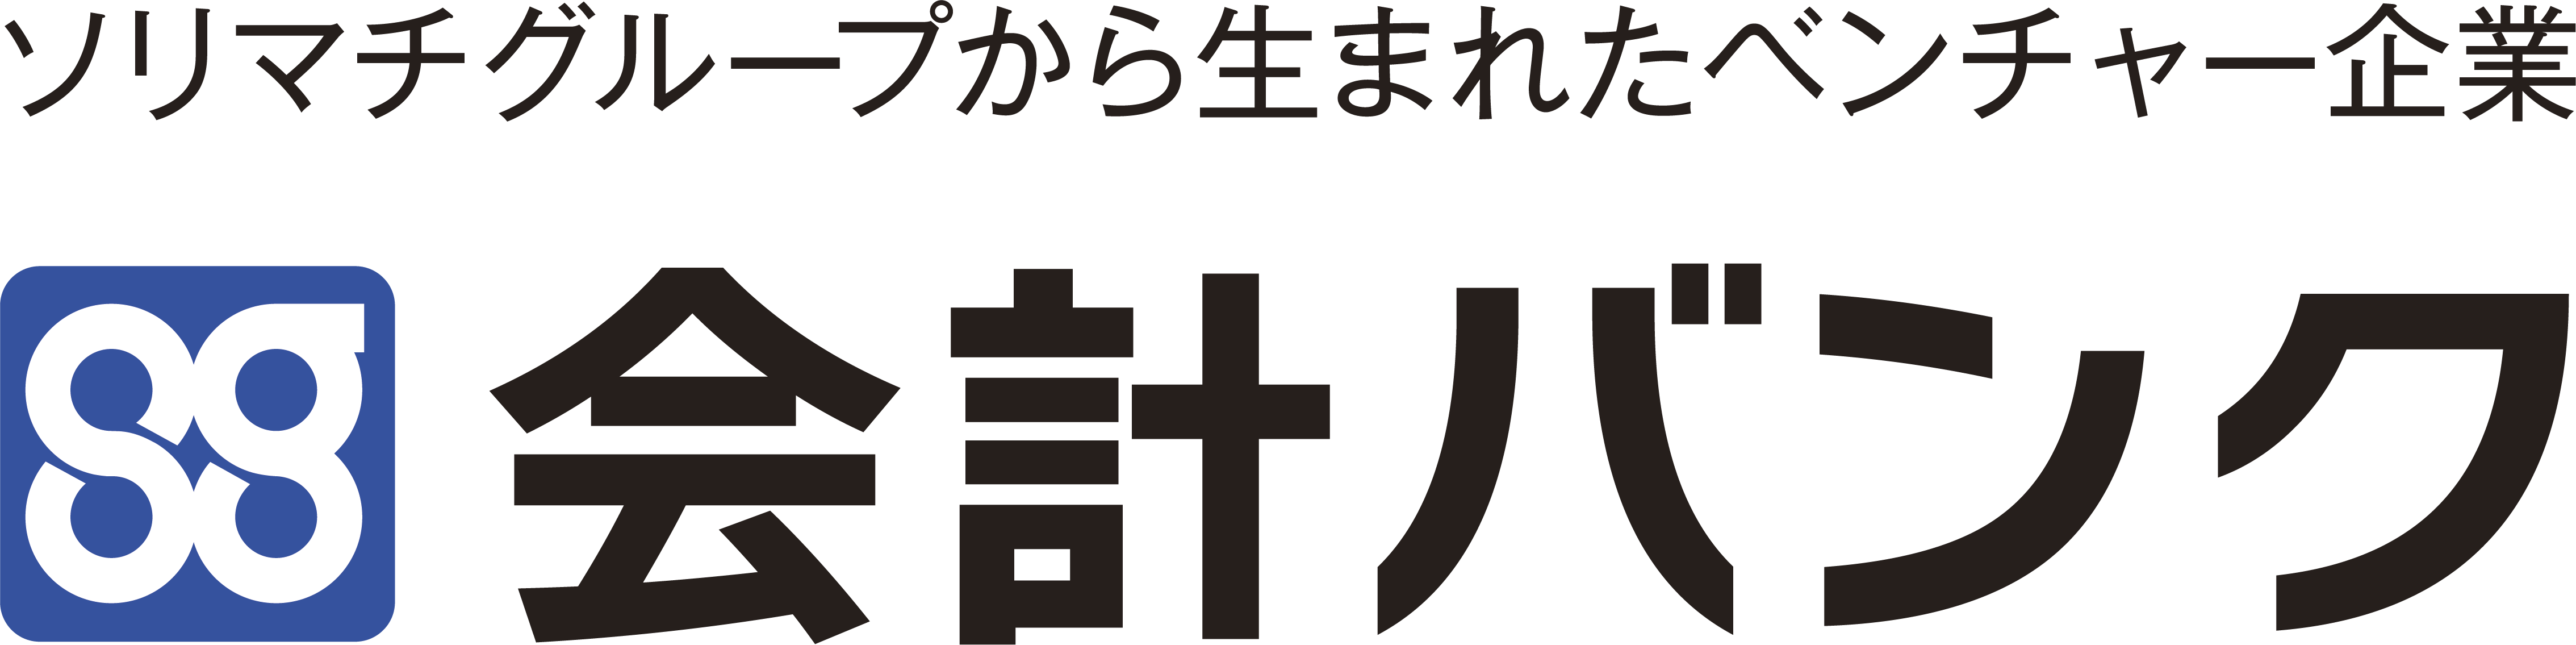 kaikeibank_logo.png